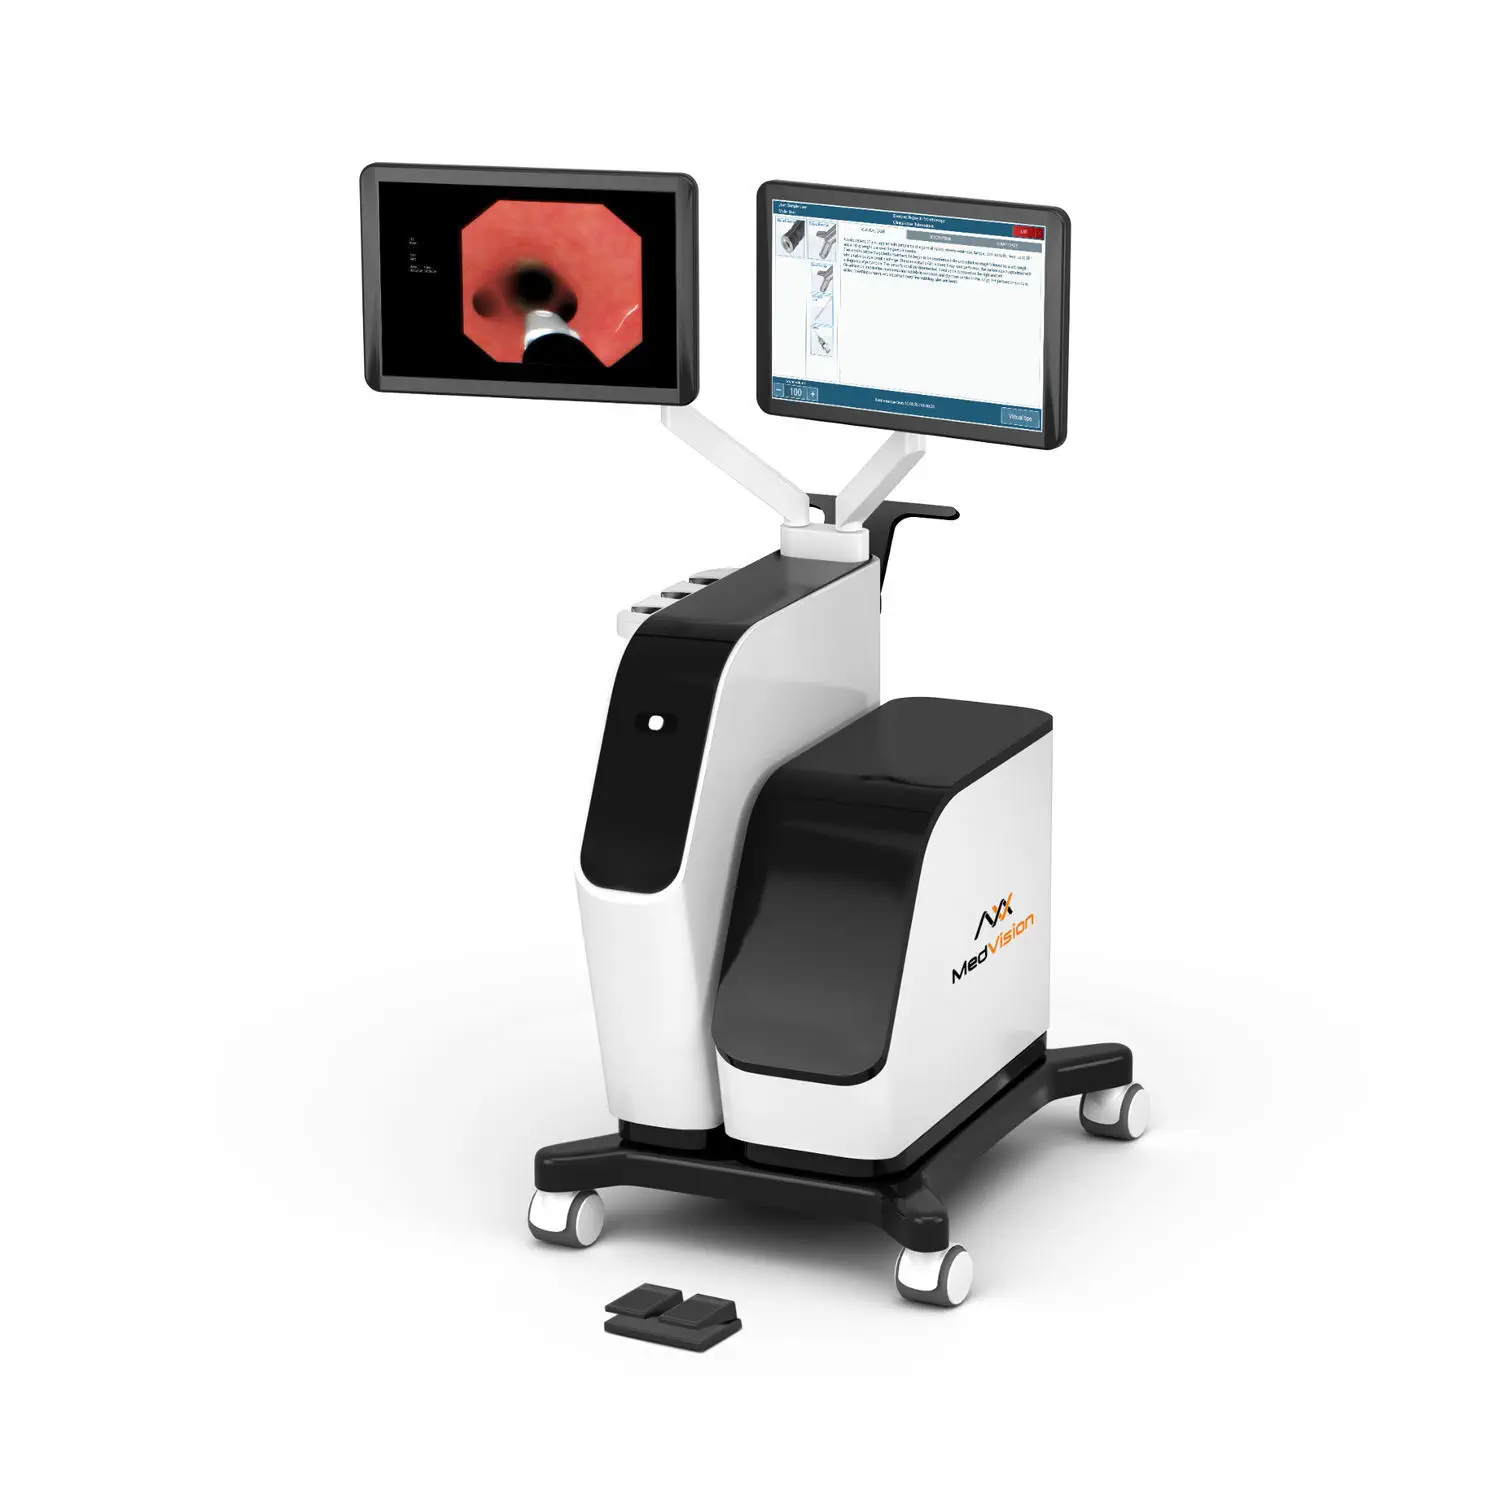 กล้องส่องตรวจสายเสียงชนิดตัดชิ้นเนื้อส่งตรวจได้  Endoscopy simulator EndoVision STANDARD  MedVision